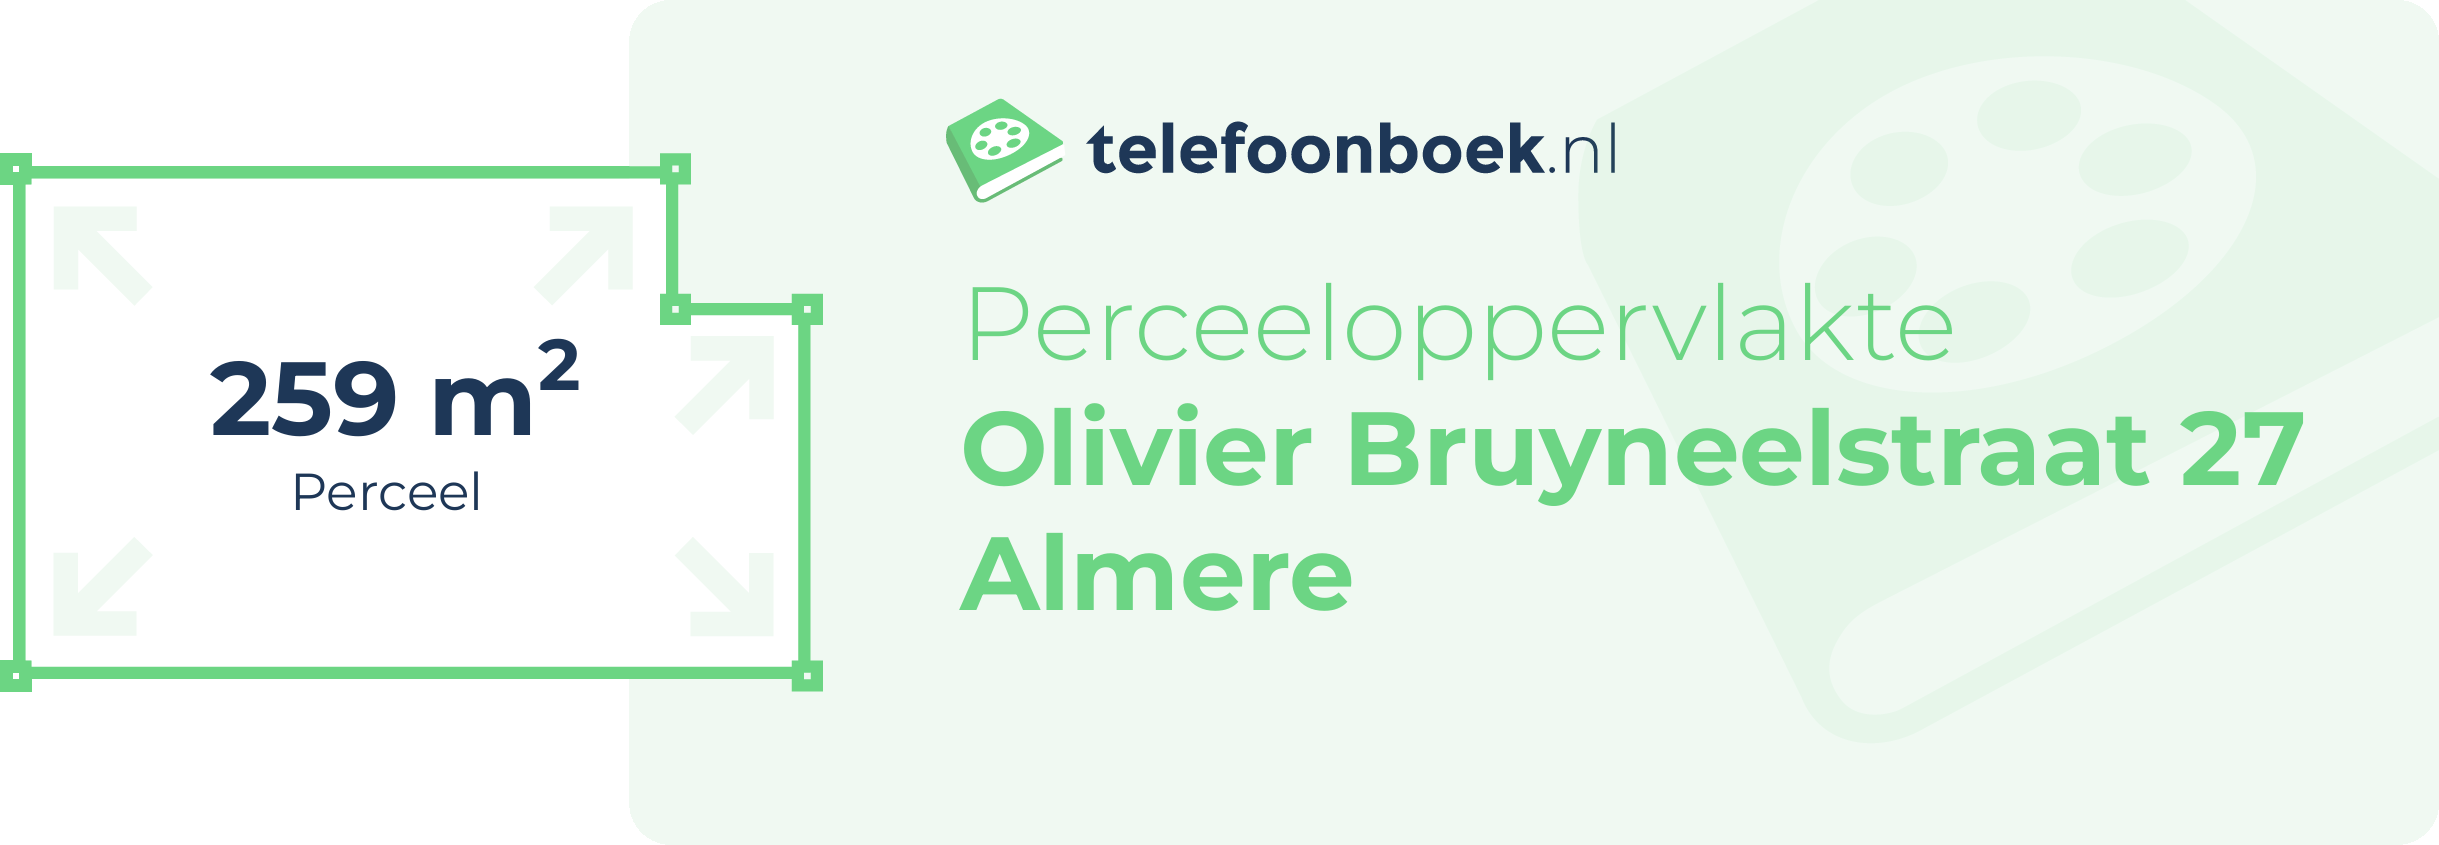 Perceeloppervlakte Olivier Bruyneelstraat 27 Almere